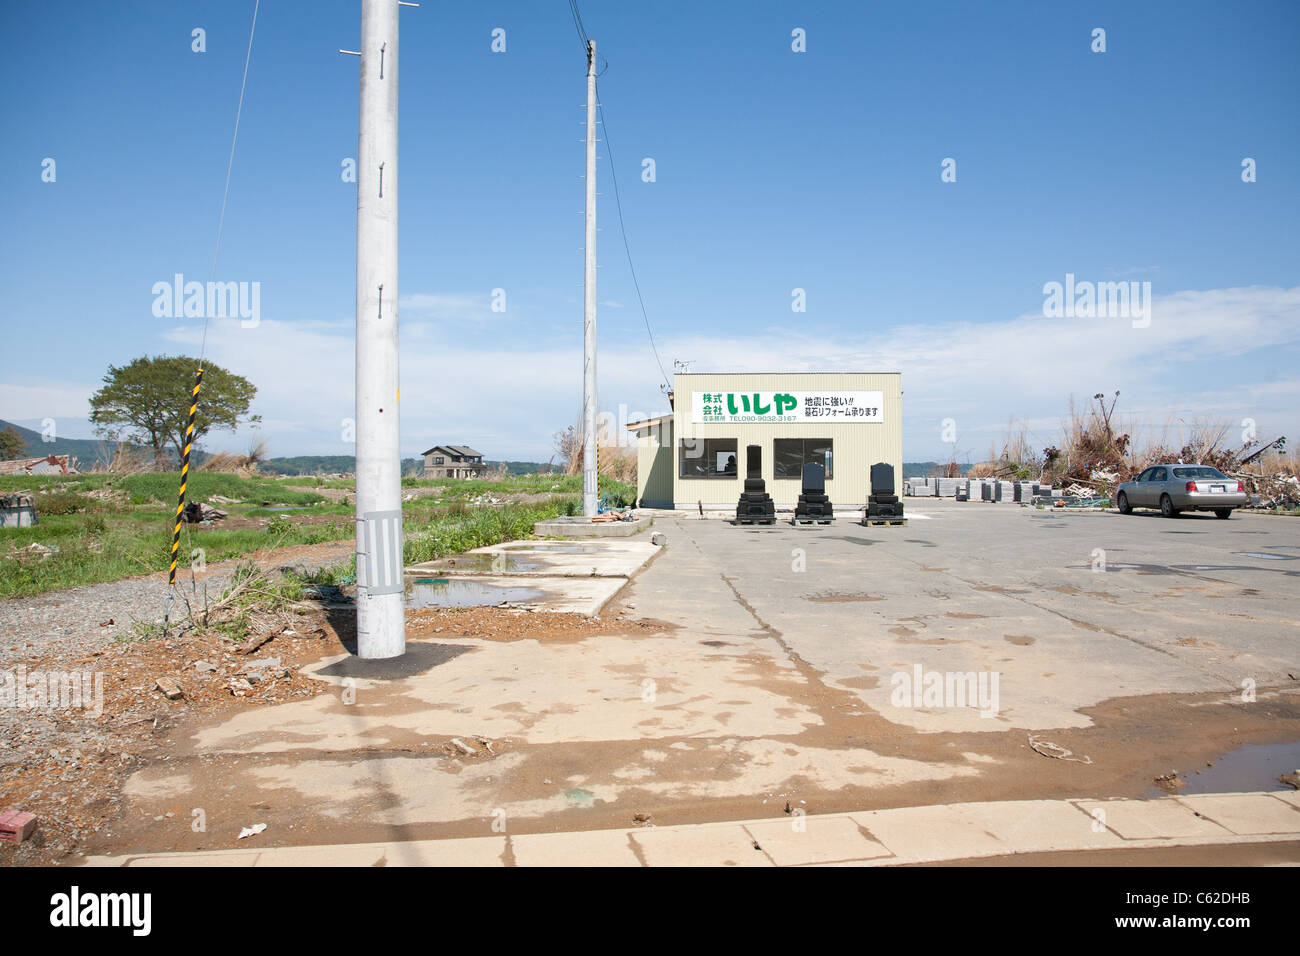 Ein Grabstein-Shop ist der einzige Open-Shop auf dieser Strecke in diesem Bereich durch den Tsunami beschädigt. Stockfoto